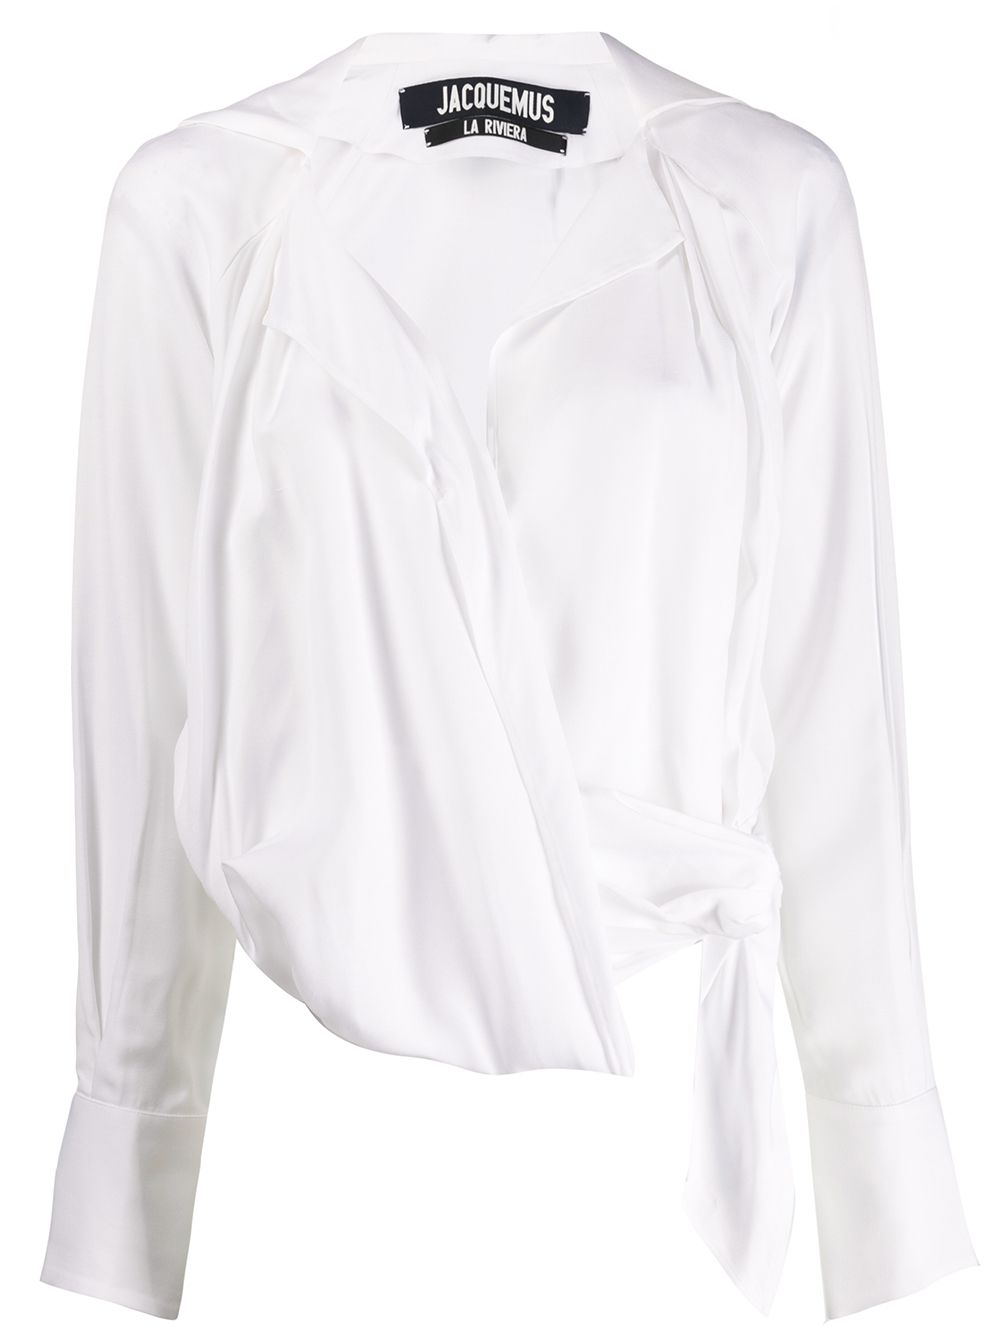 фото Jacquemus приталенная блузка с поясом